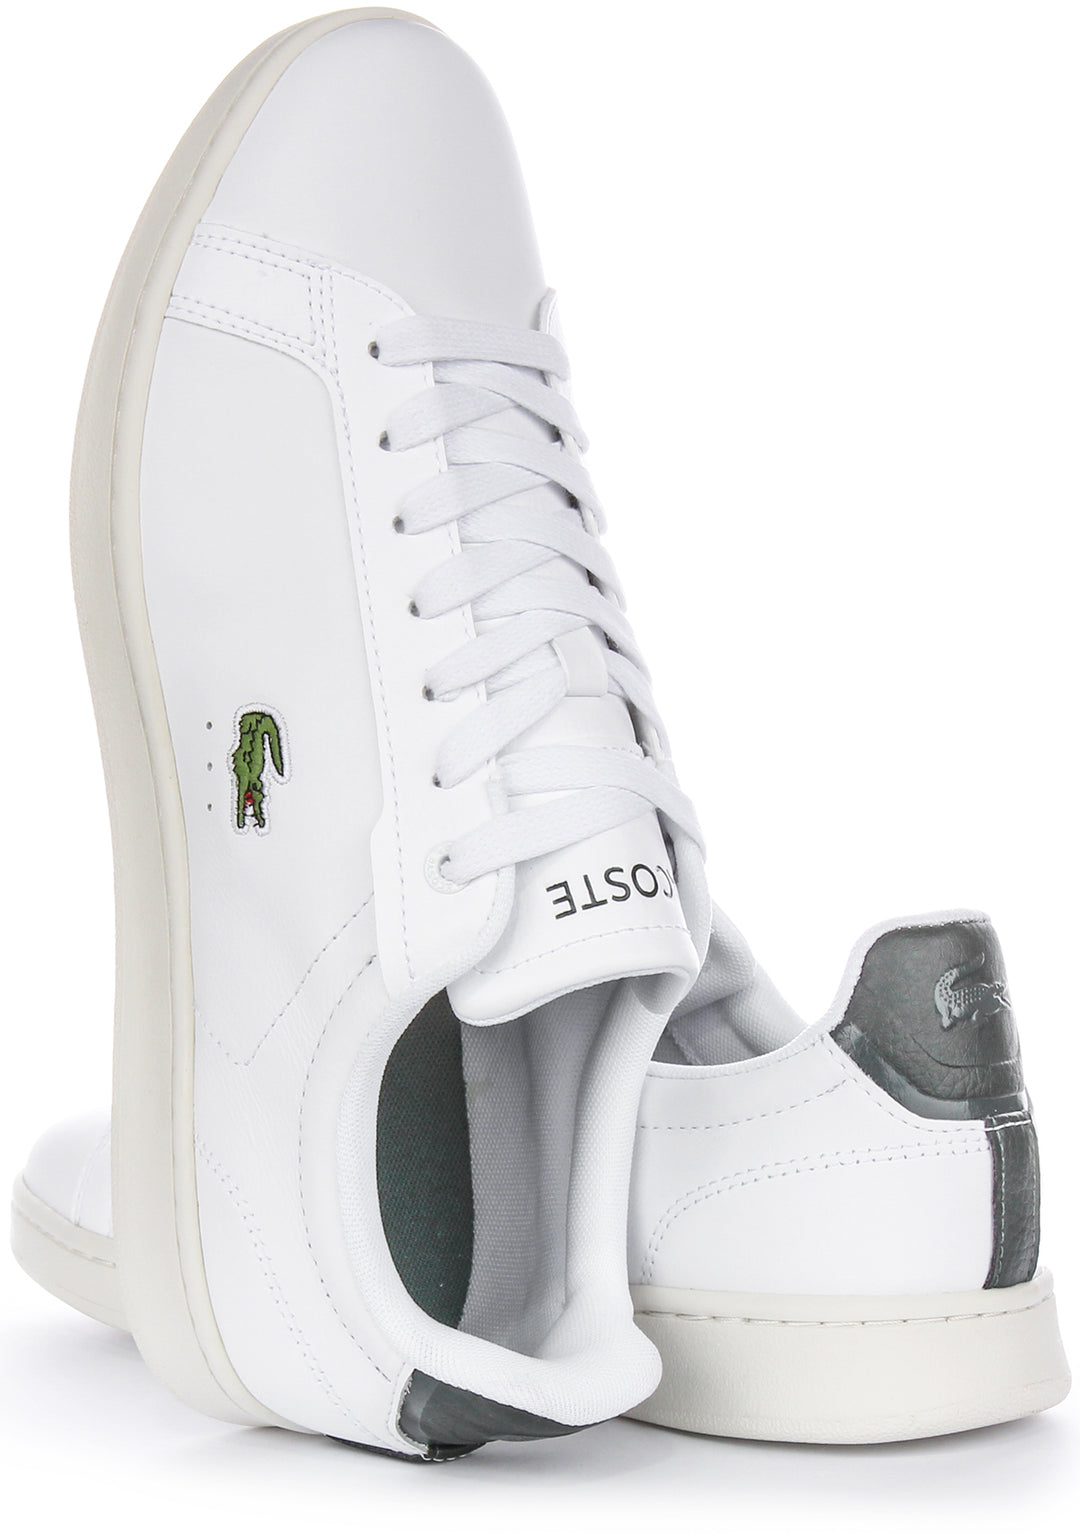 Lacoste Carnaby Pro Herren Ledersneaker in Weiß Grün